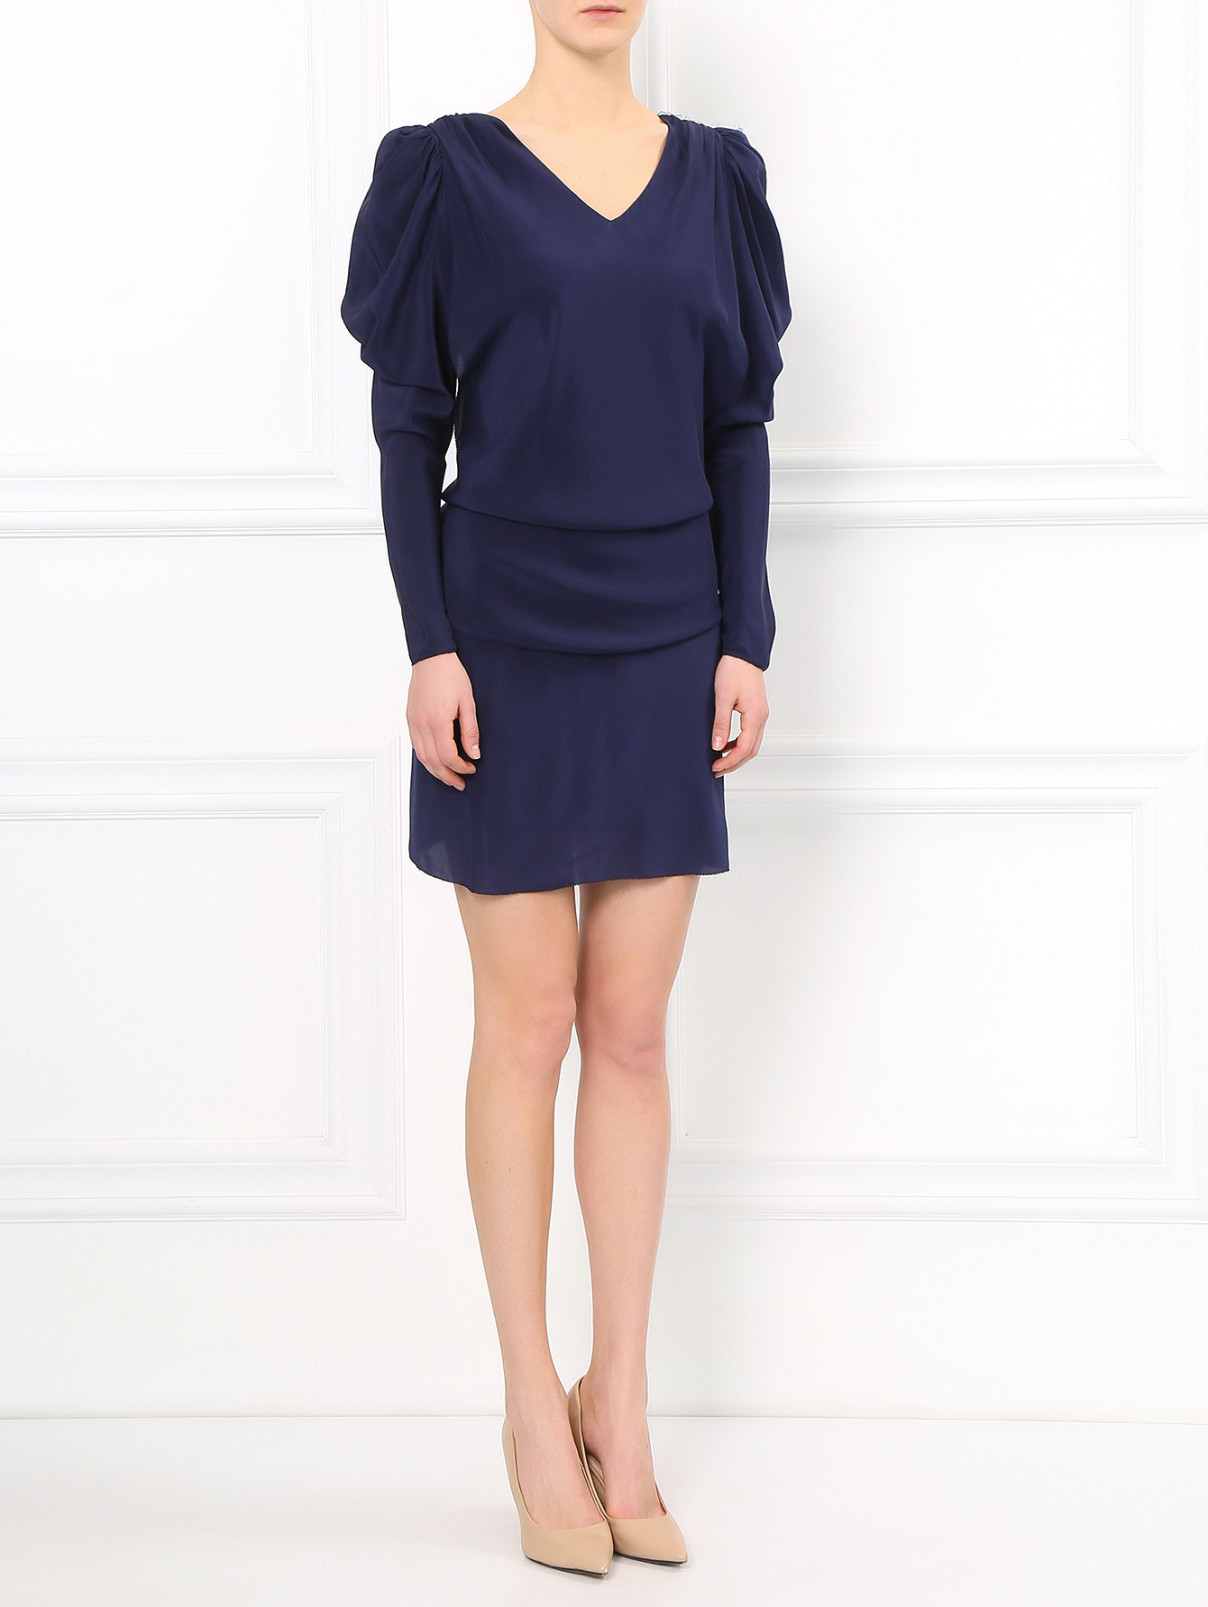 Платье-мини из шелка с объемными рукавами See by Chloe  –  Модель Общий вид  – Цвет:  Синий